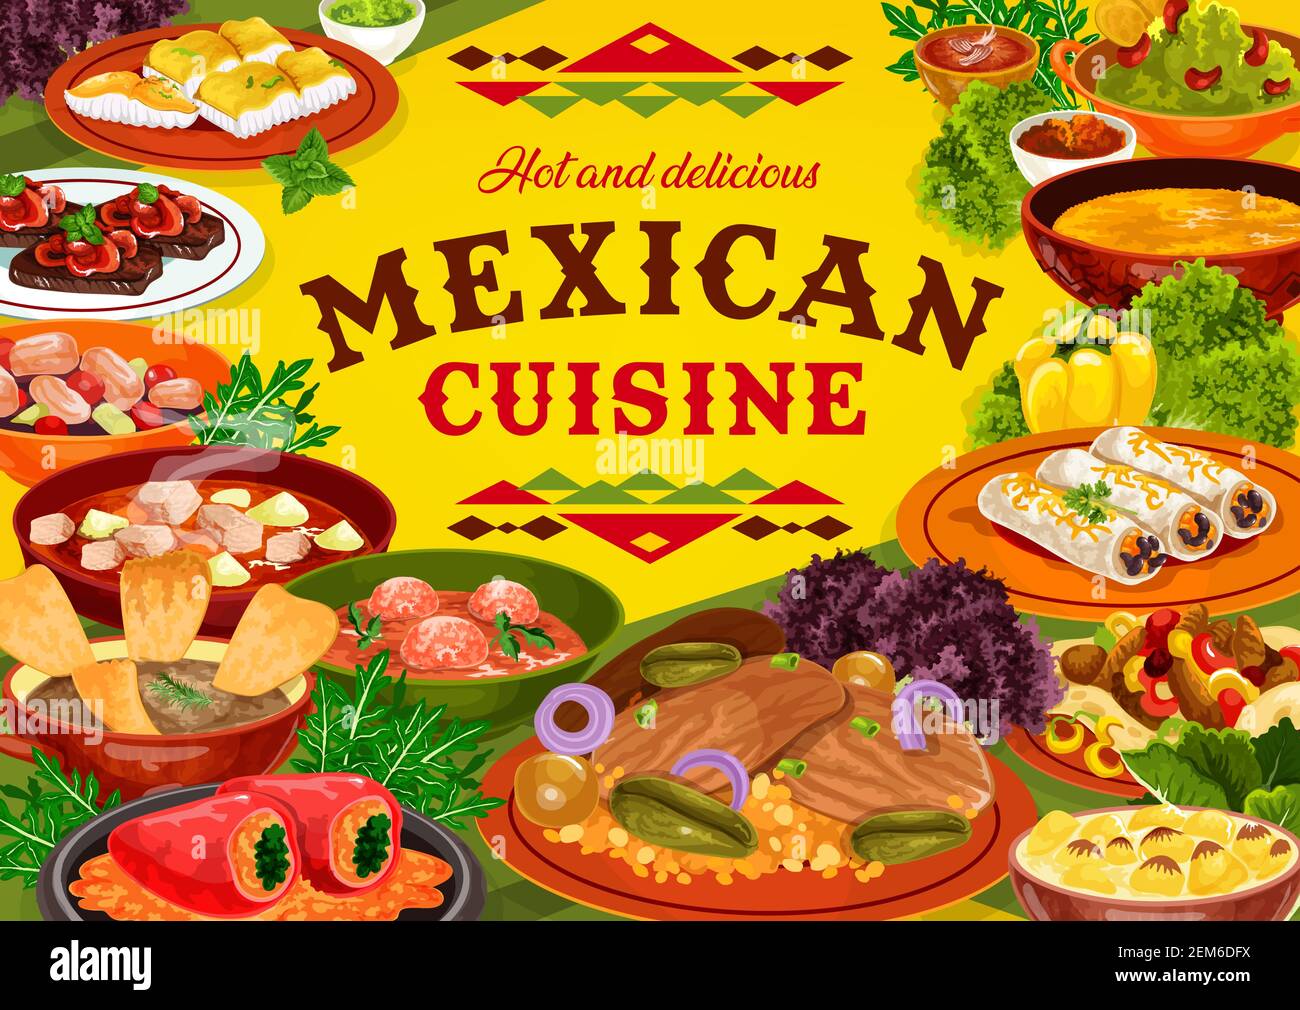 Mexikanische Küche Restaurant Essen Vektor Design. Fleisch- und Gemüsegerichte von Burritos, Fajitas und Estofado-Eintopf, gefüllte Paprika, Rindersteaks und Fisch Stock Vektor